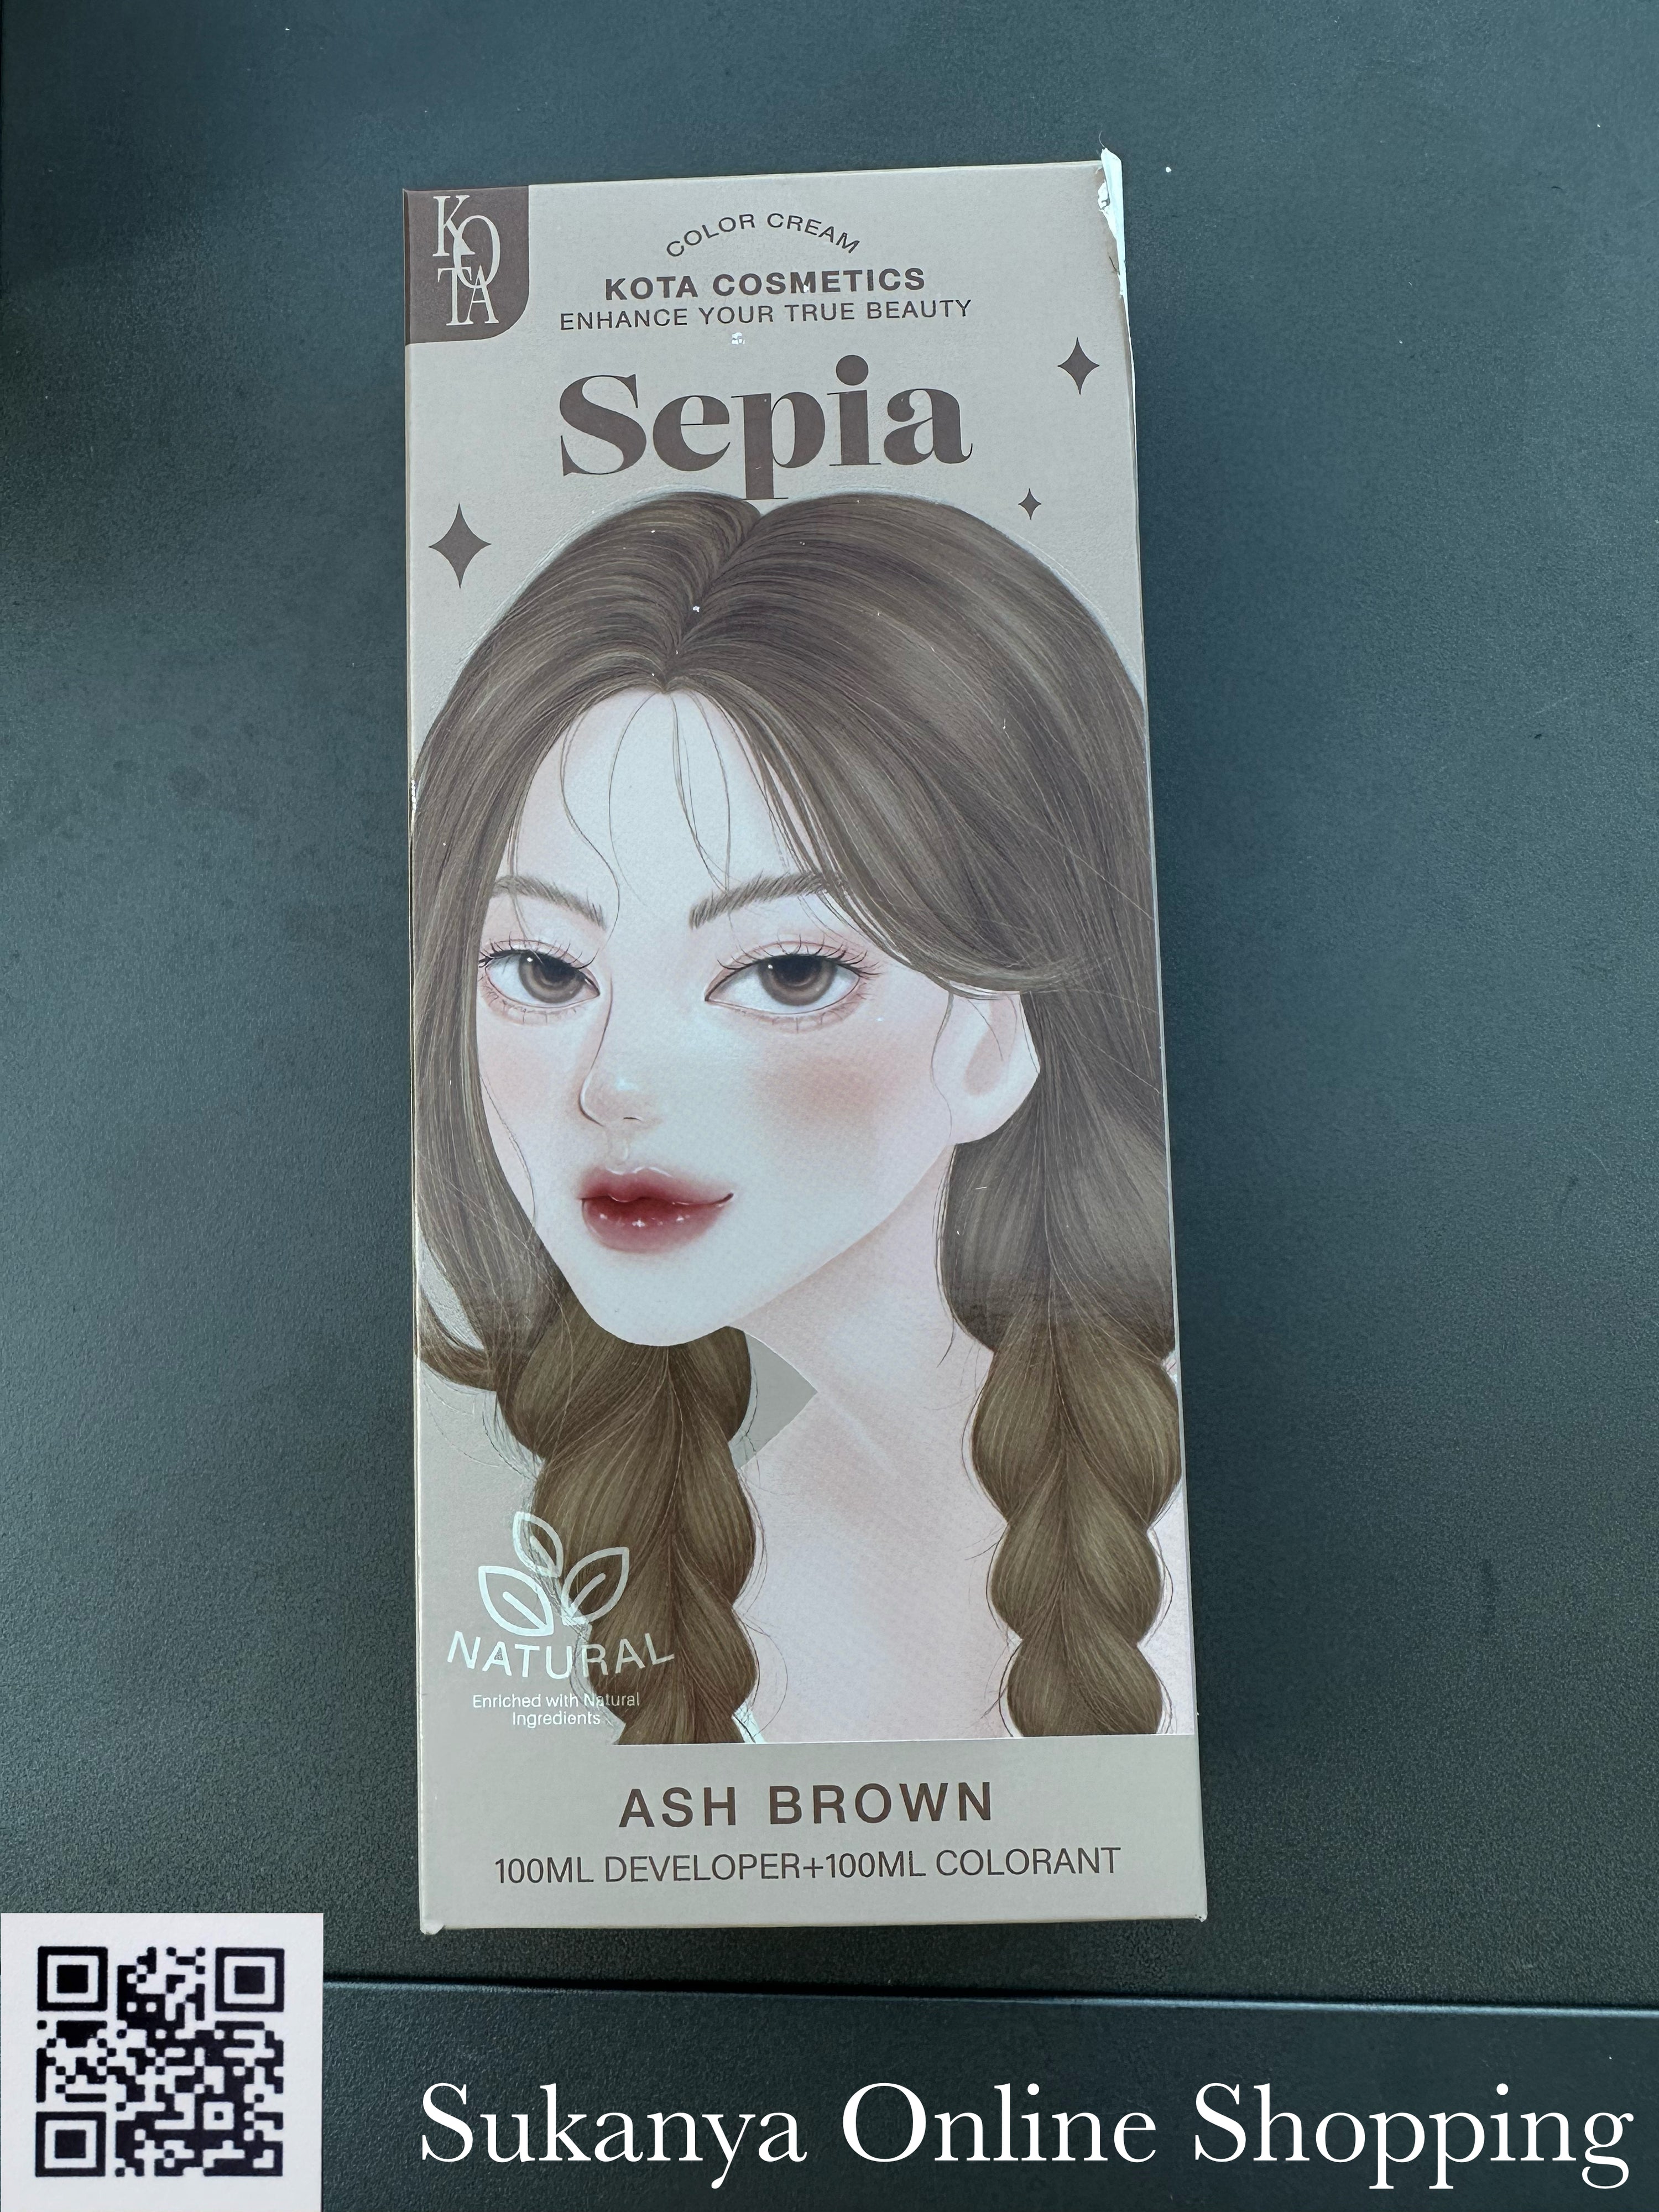 ยาย้อมผม-โคทา คอสเมติก คัลเลอร์ ครีม ซีเปีย(เอช บราวน์) Kota Cosmetics Color Cream Sepla (Ash Brown)